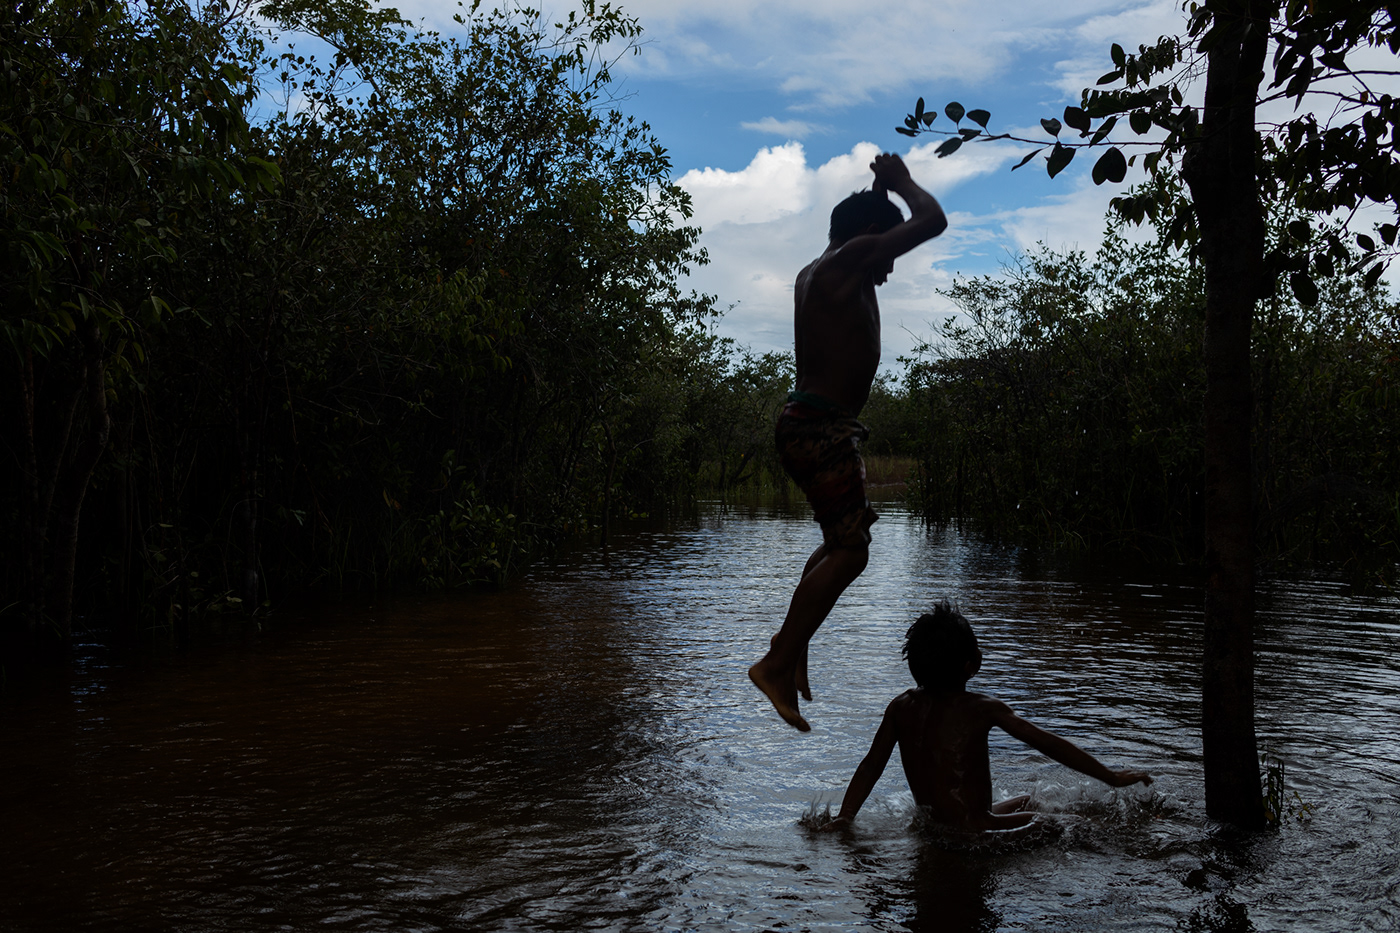 Amazon xingu rainforest BRAZILLIAN AMAZON Documentary Photography ETHINIC PHOTOGRAPHY people Brazil native people XINGU INDIGENOUS PARK